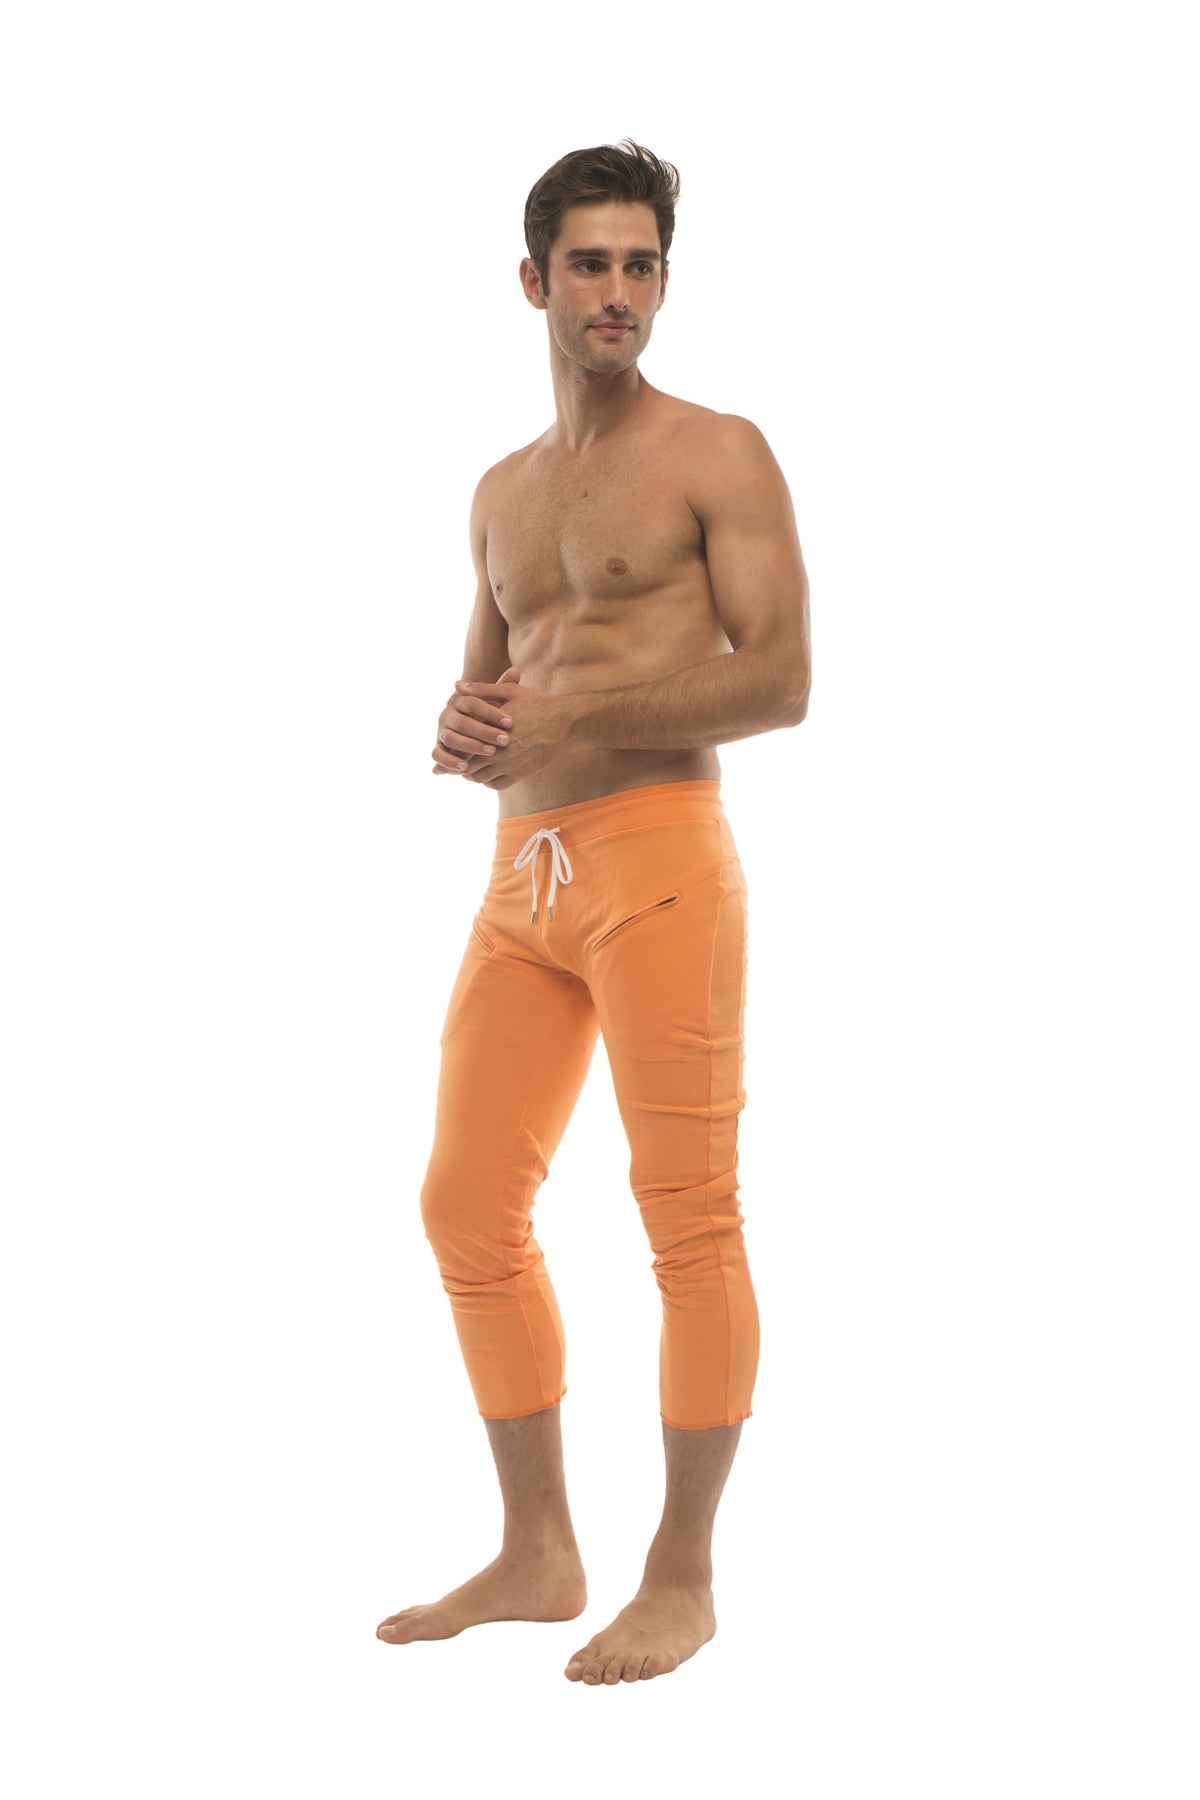 https://www.4-rth.com/cdn/shop/products/mens-45-zipper-pocket-capri-yoga-pants-solid-orange-capri-pants-4-rth-418098_1800x1800.jpg?v=1571673965